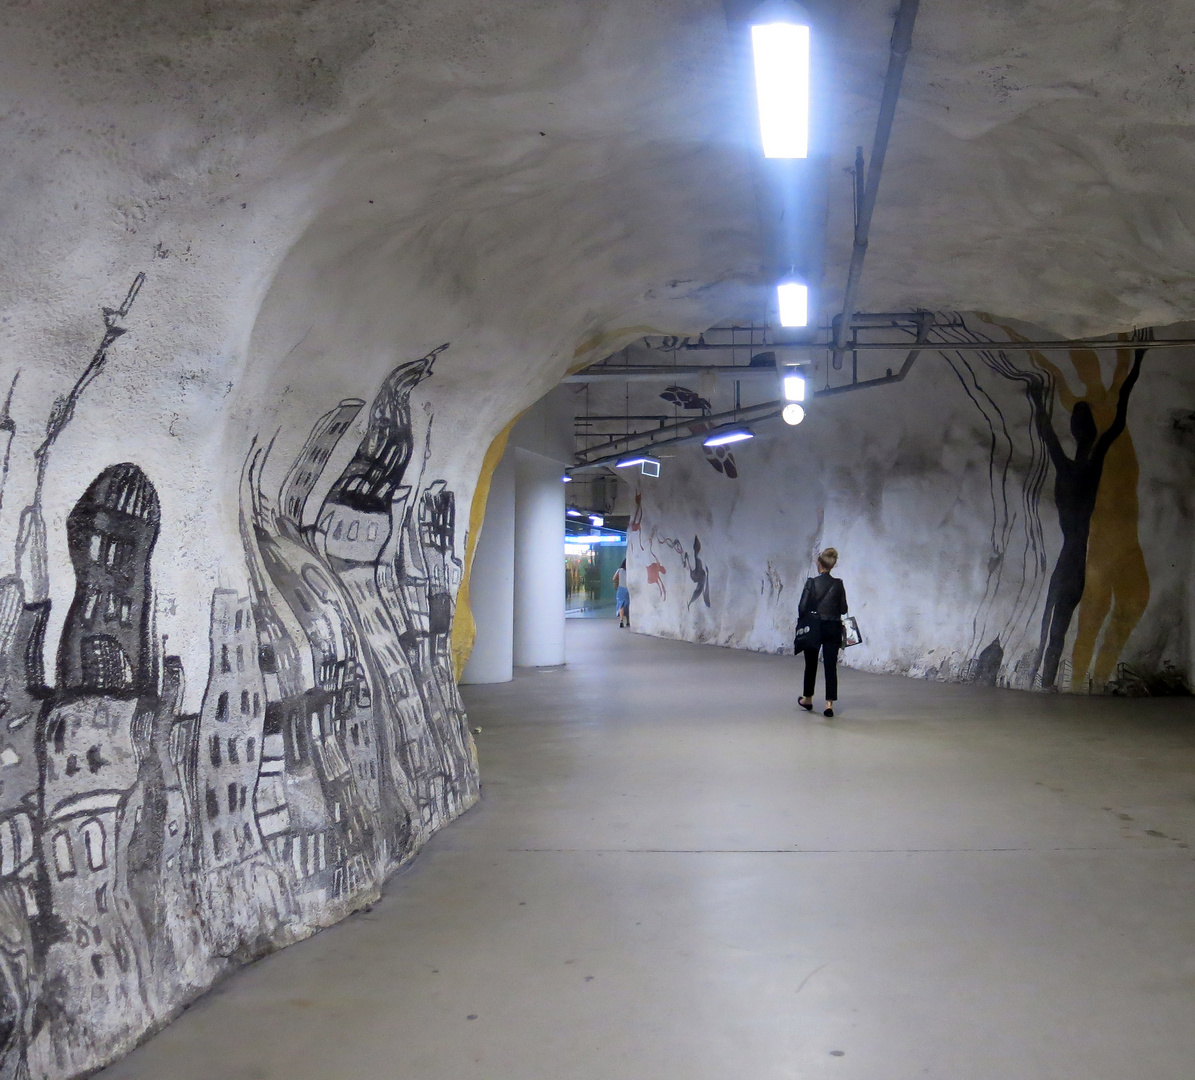 Helsinky Metro